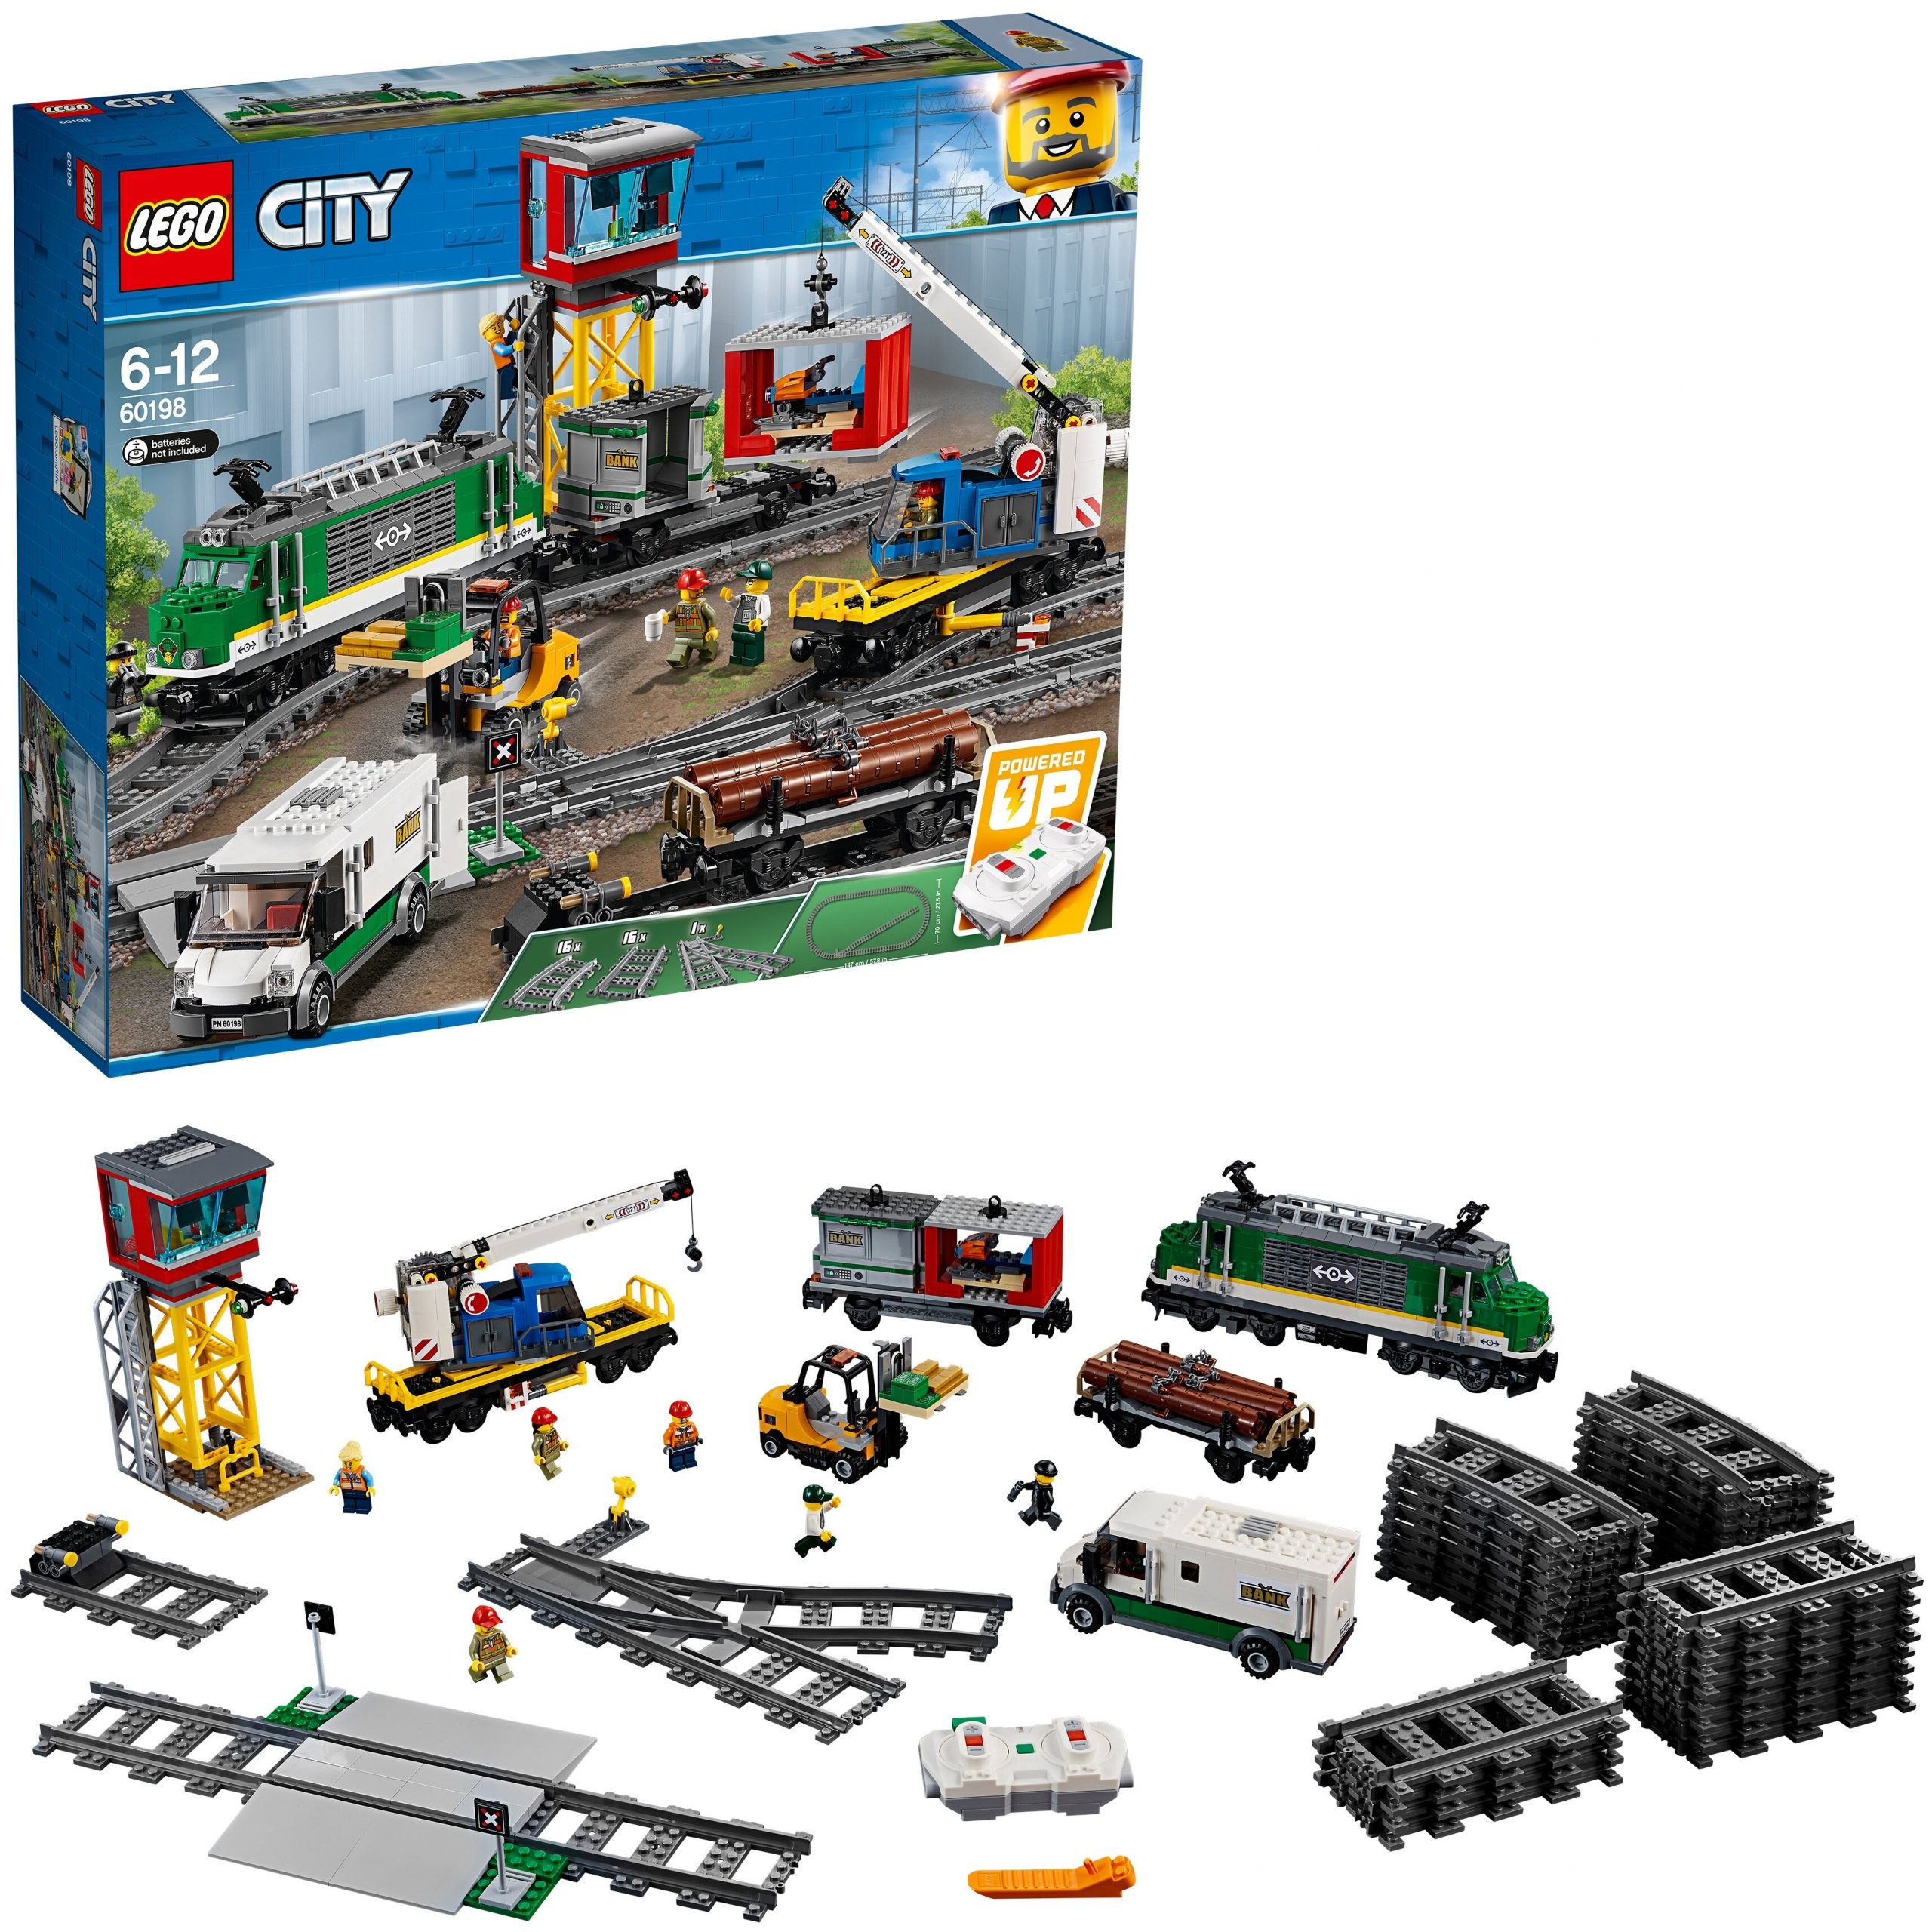 LEGO City Trains 60198 Товарный поезд